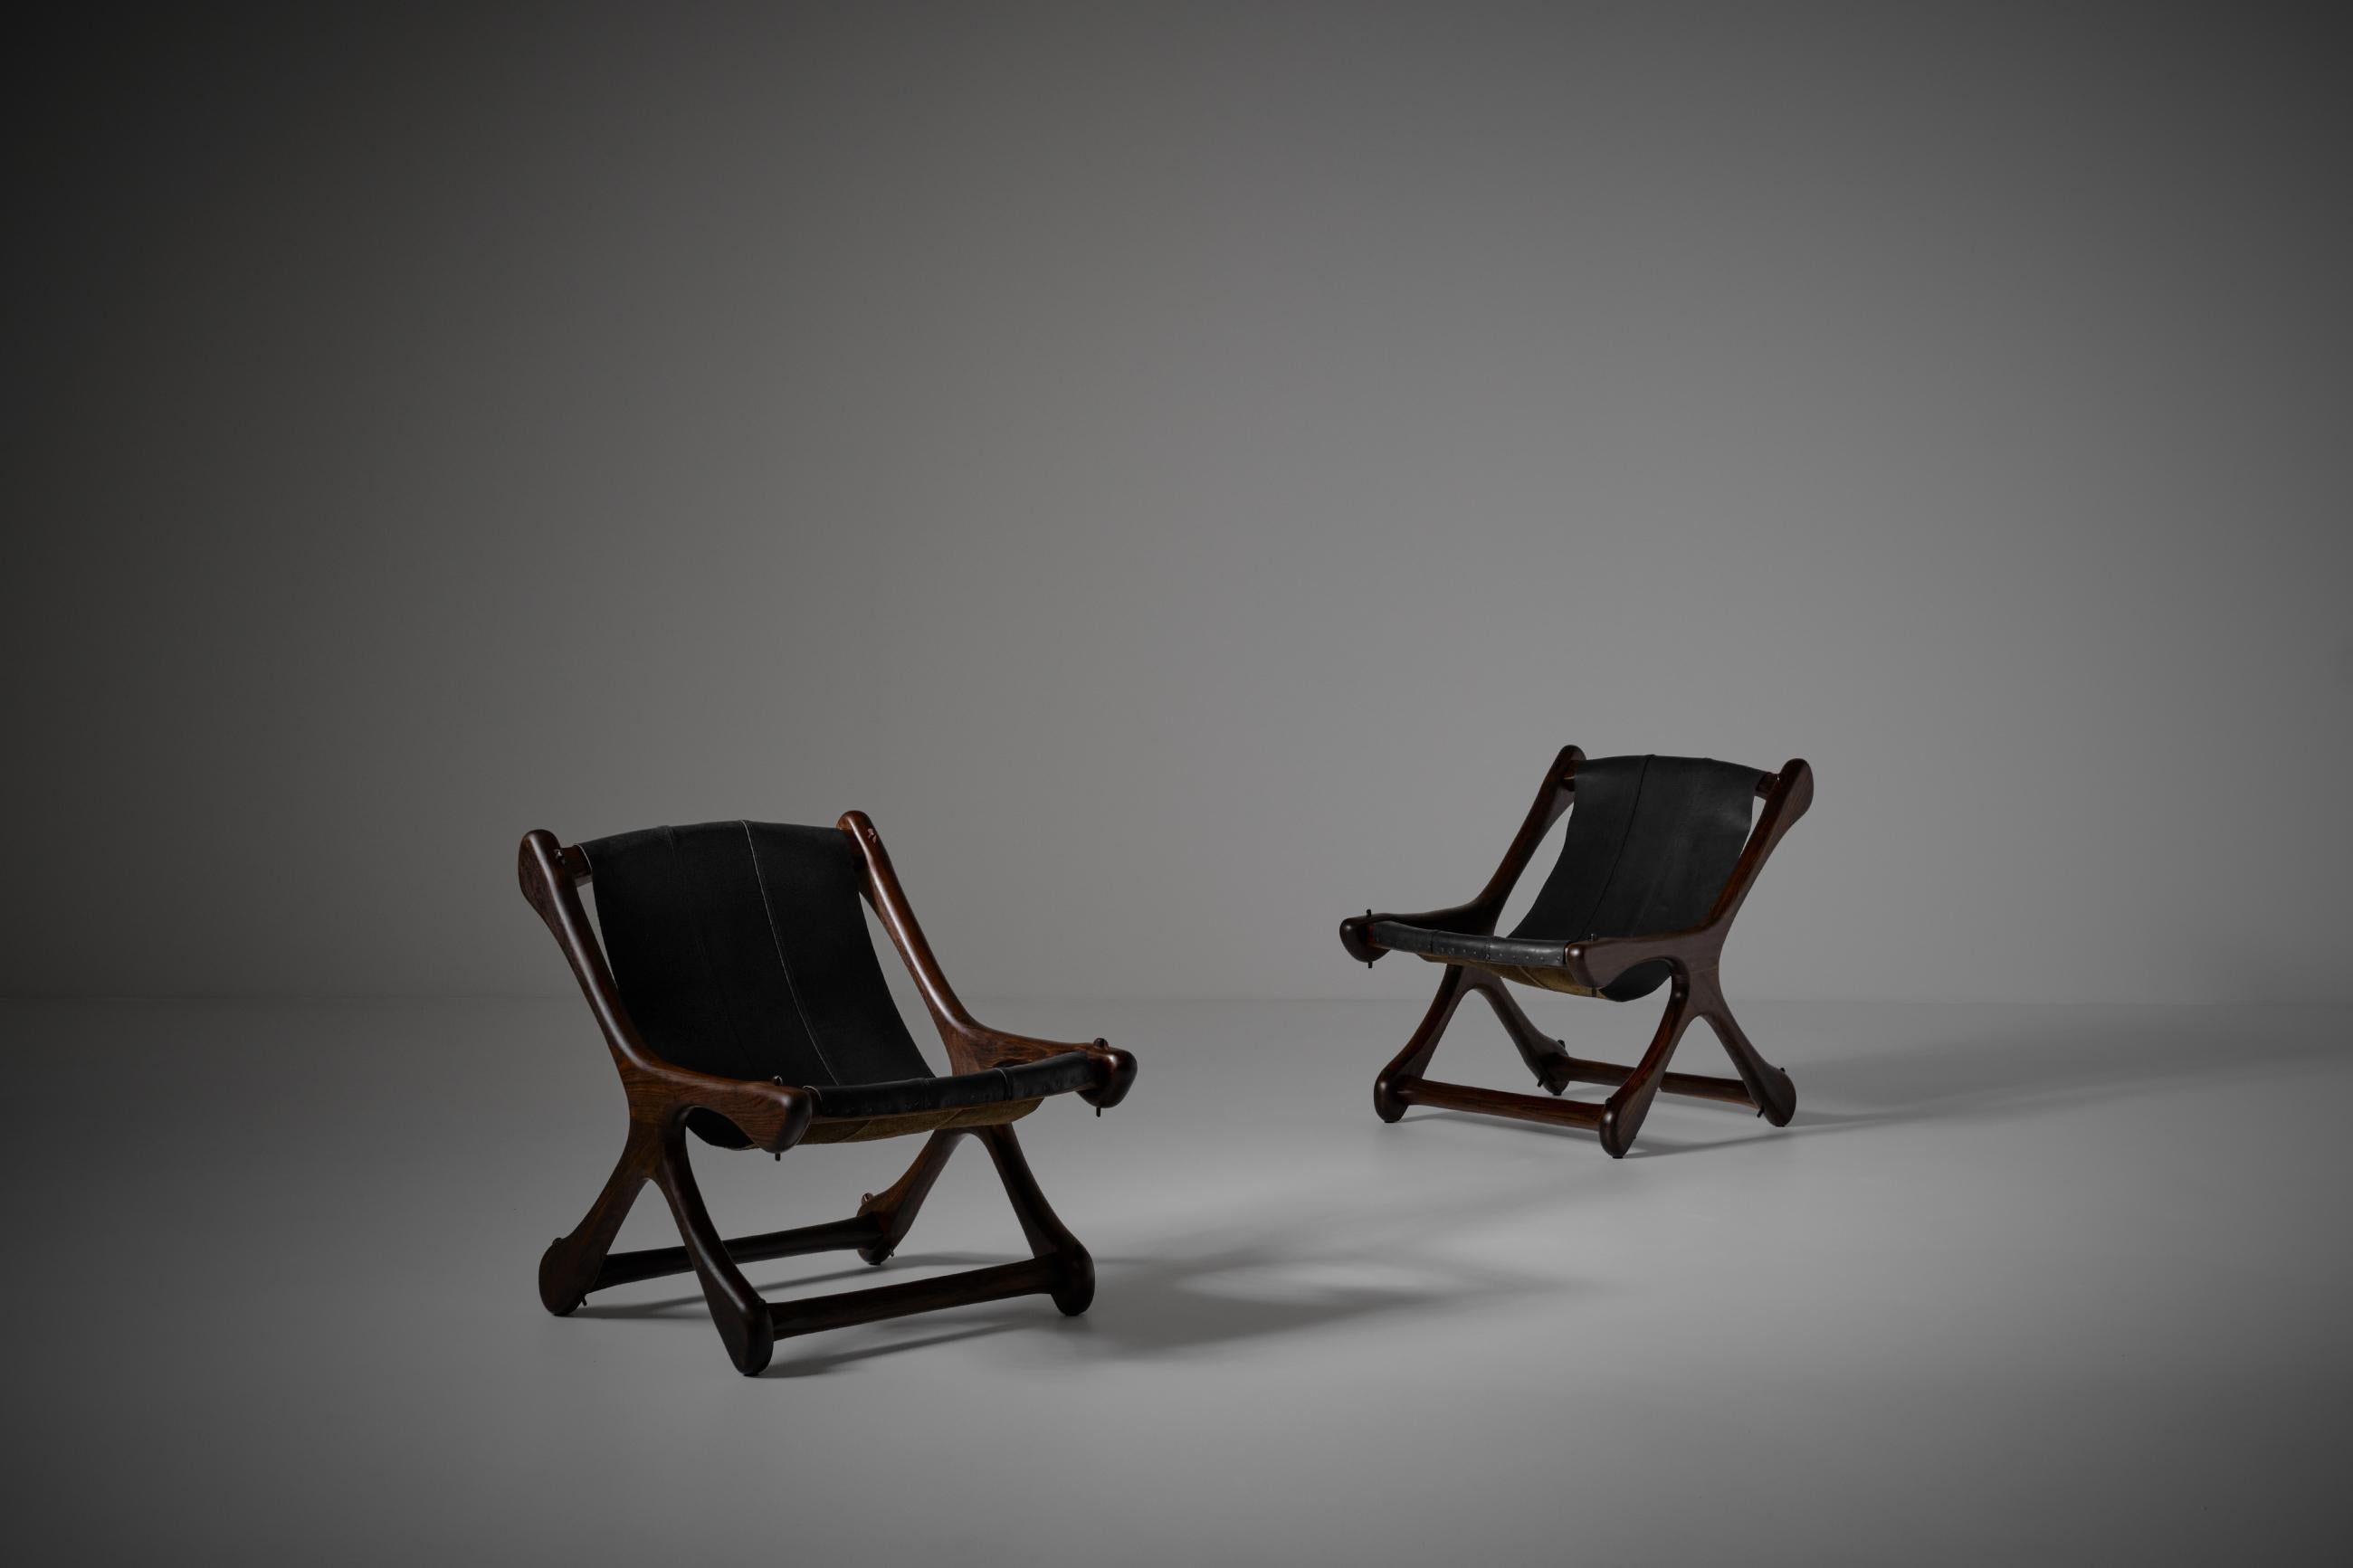 Paire de chaises longues modèle 'Sloucher' de Don Shoemaker pour Señal, Mexique années 1960. Une structure osseuse exceptionnelle de forme organique avec un beau siège en cuir en bandoulière. Des formes intéressantes et des détails étonnants tels